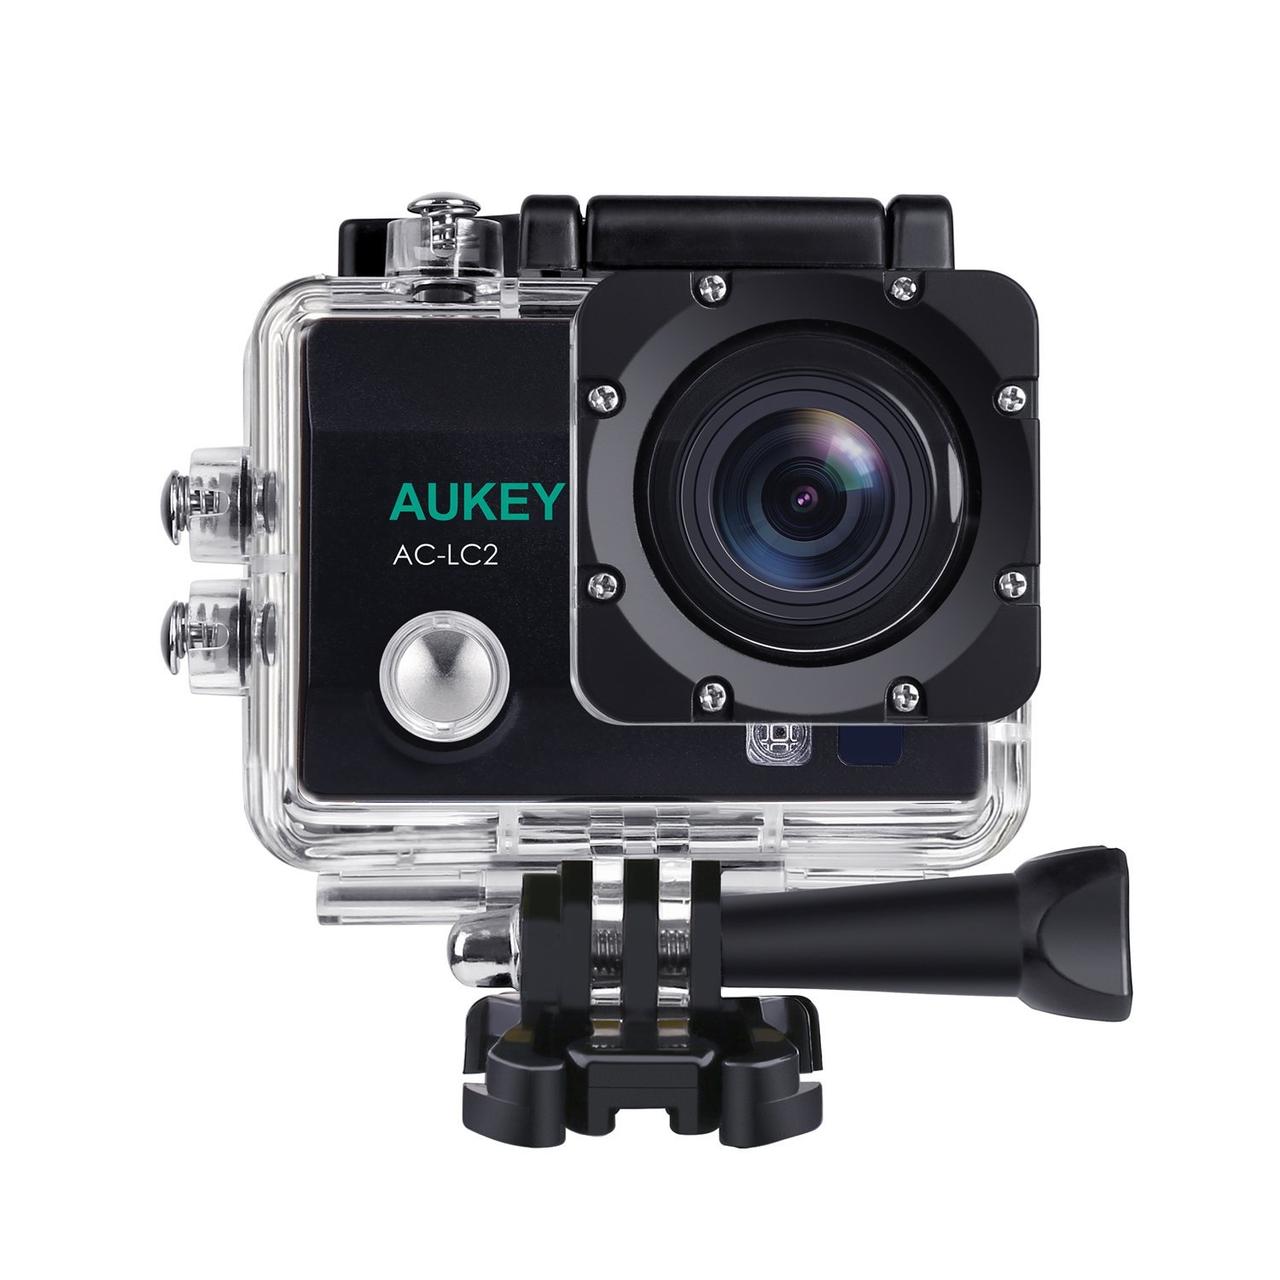 AUKEYより、8,999円であれこれ付いてくる4K対応アクションカメラ